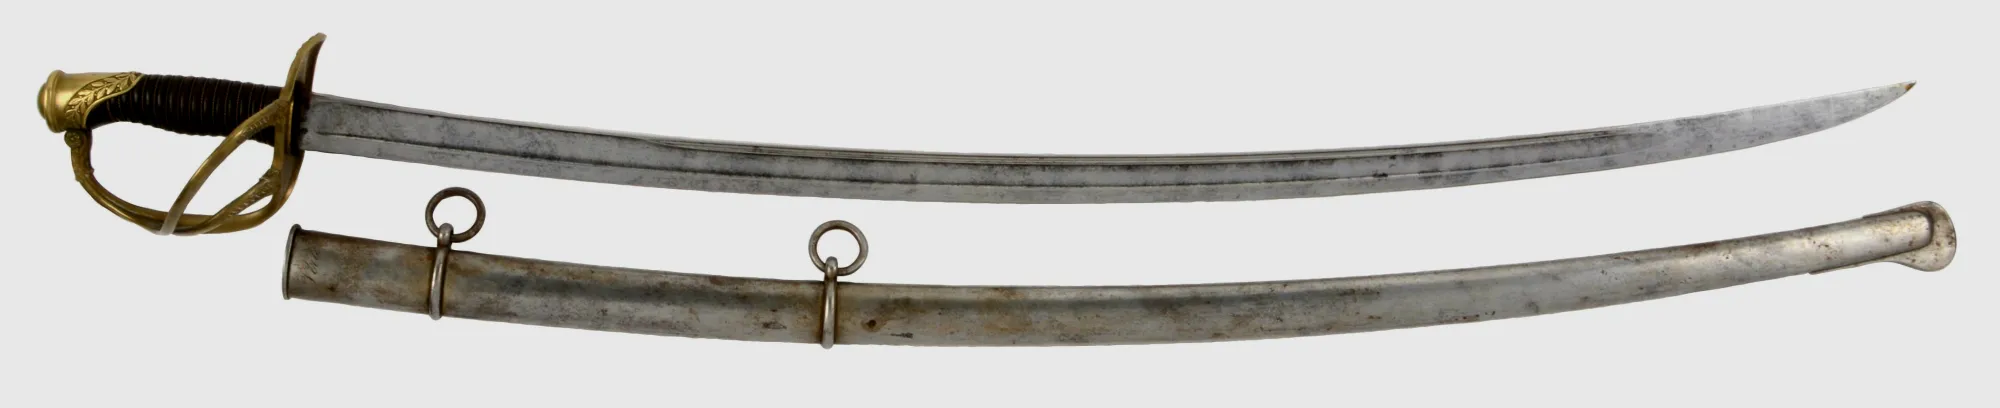 法国1864型军刀